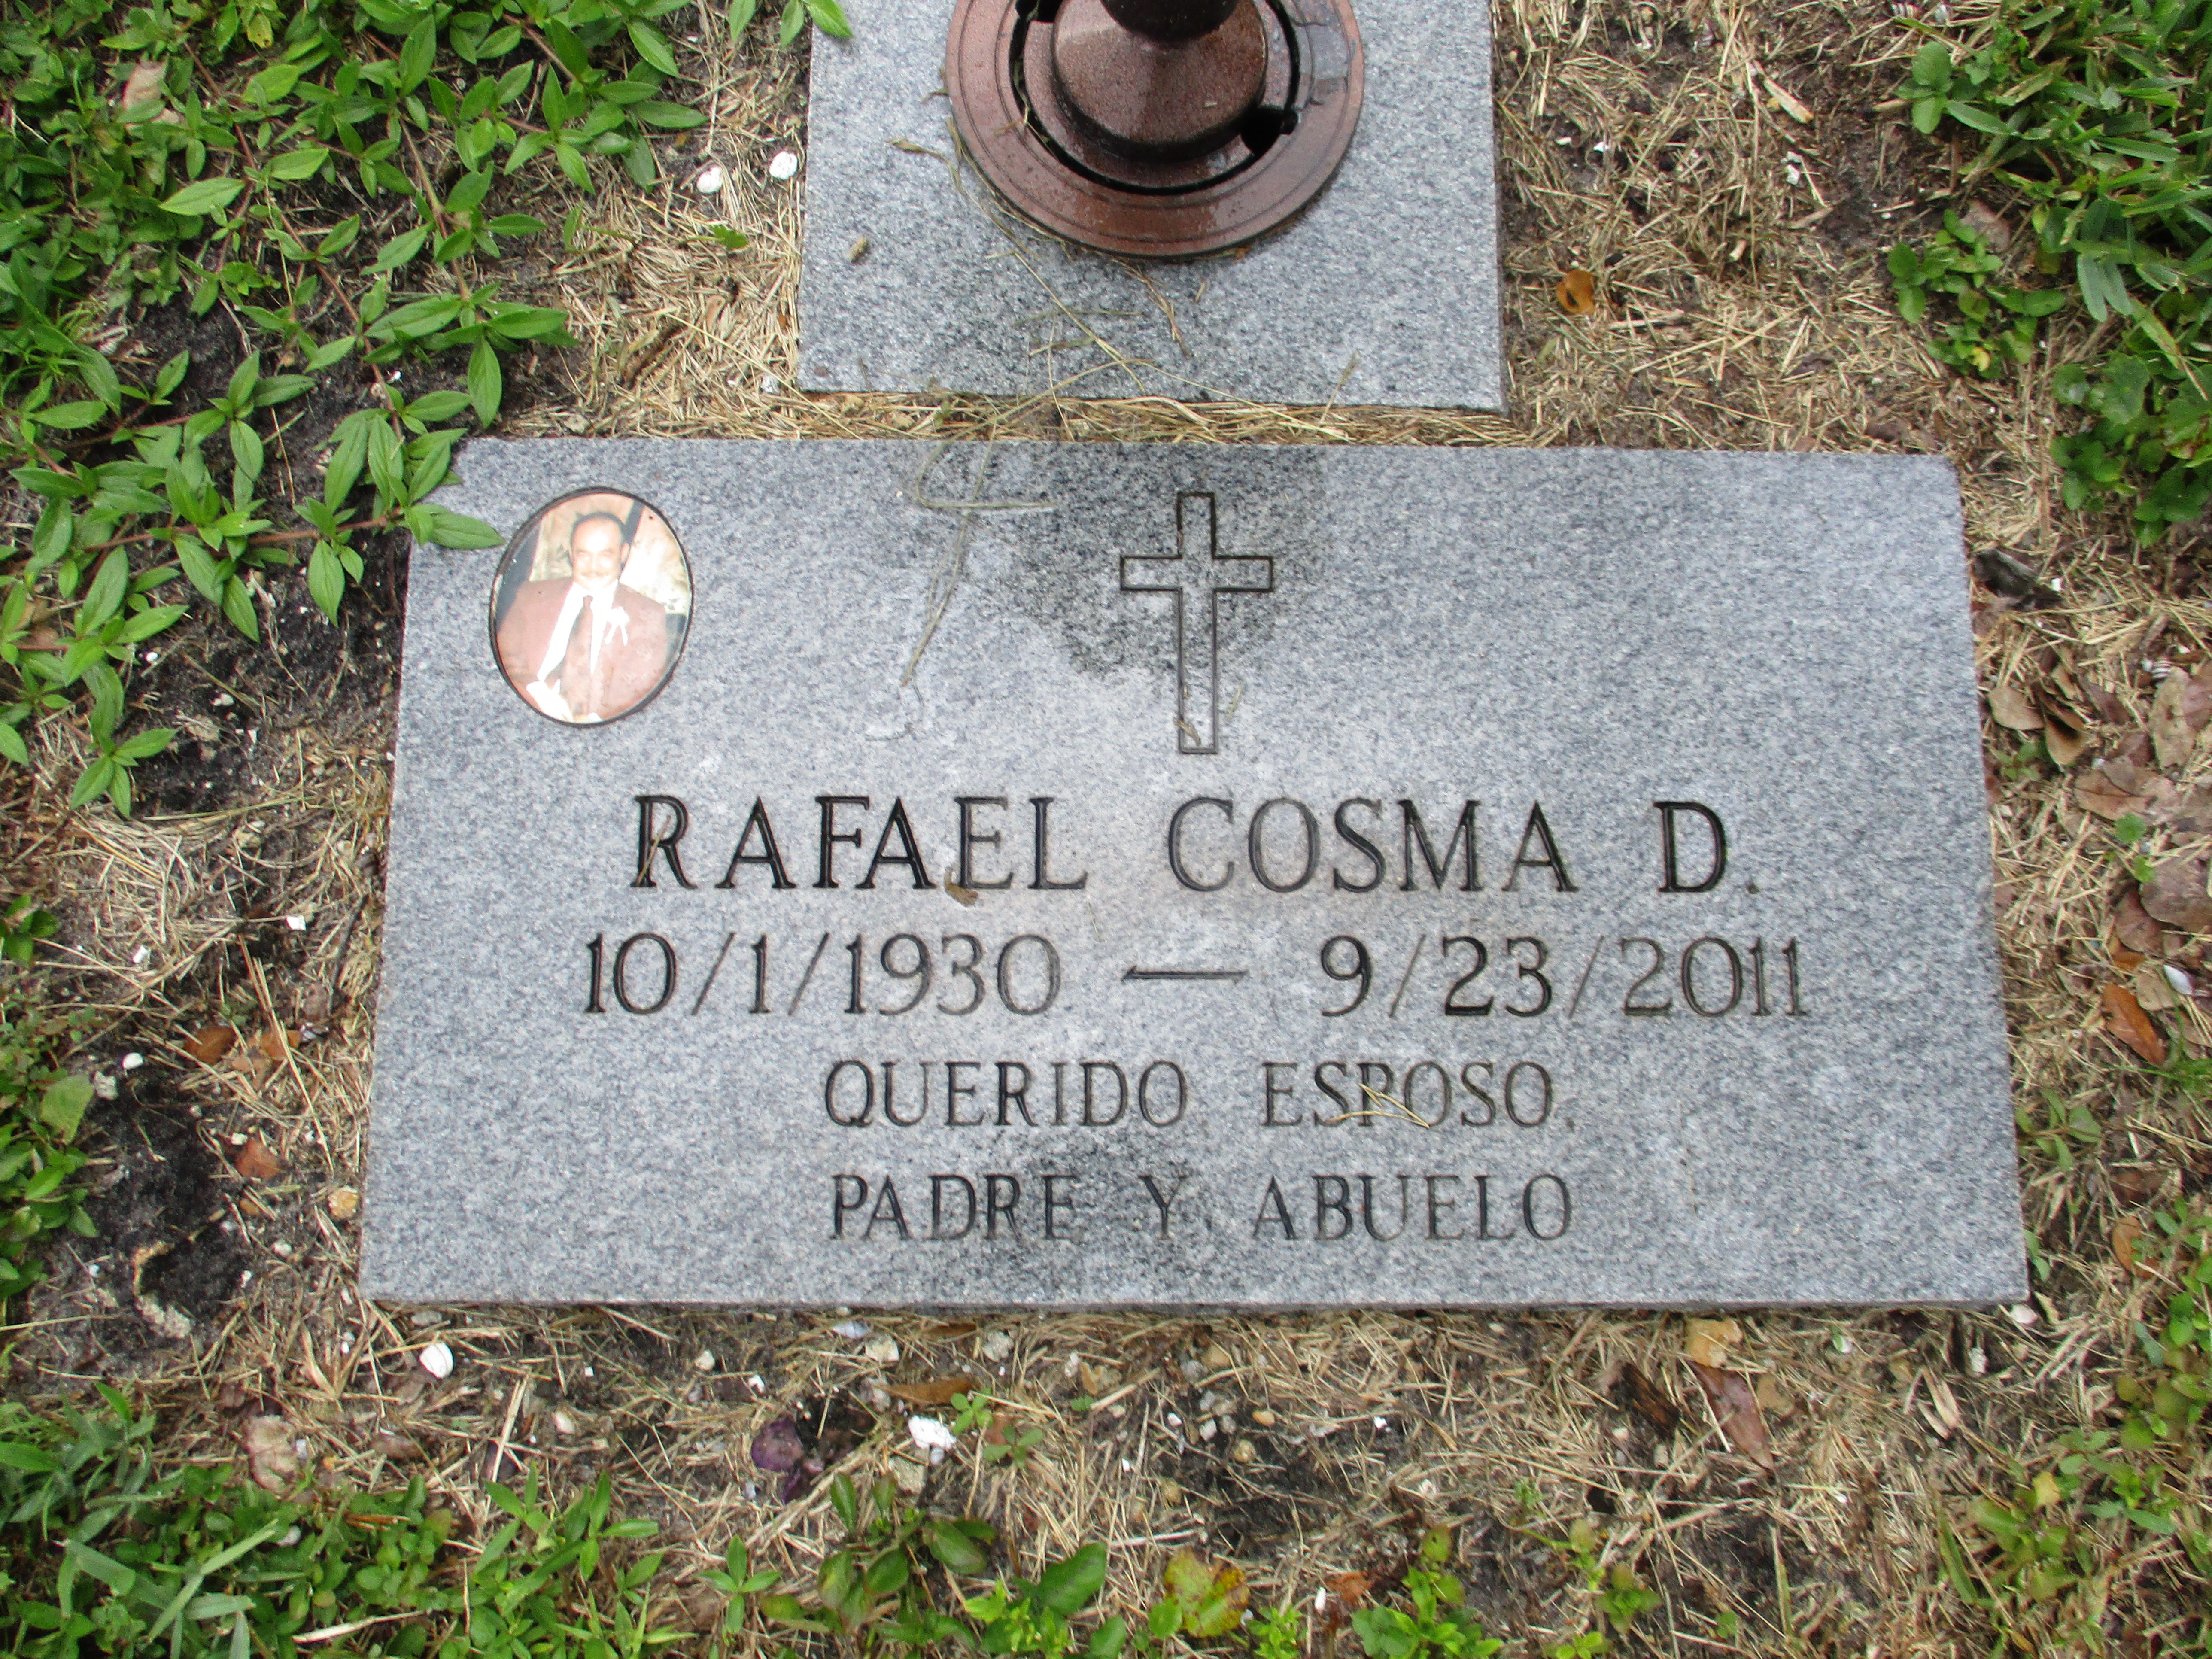 Rafael Cosma D